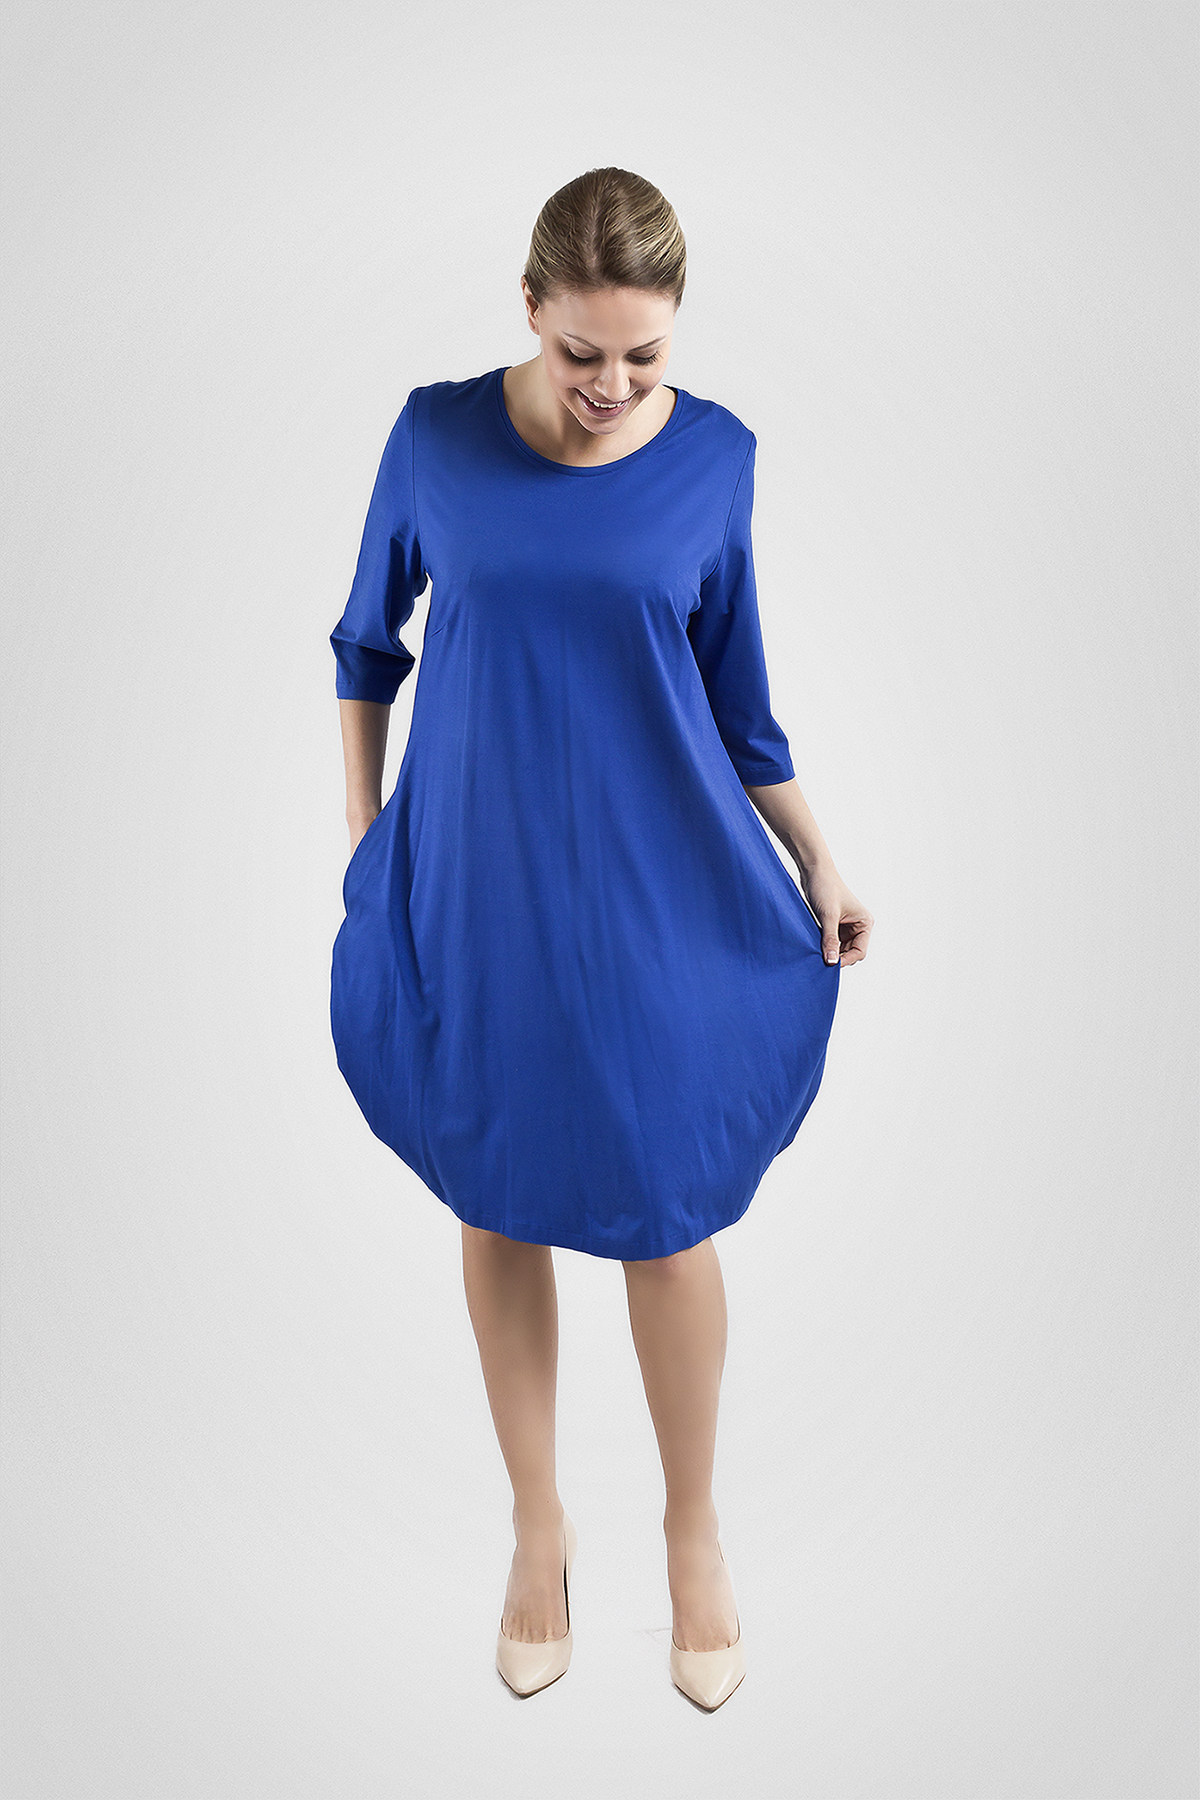 Kleid Royal- blau mit Taschen - Valentina Design